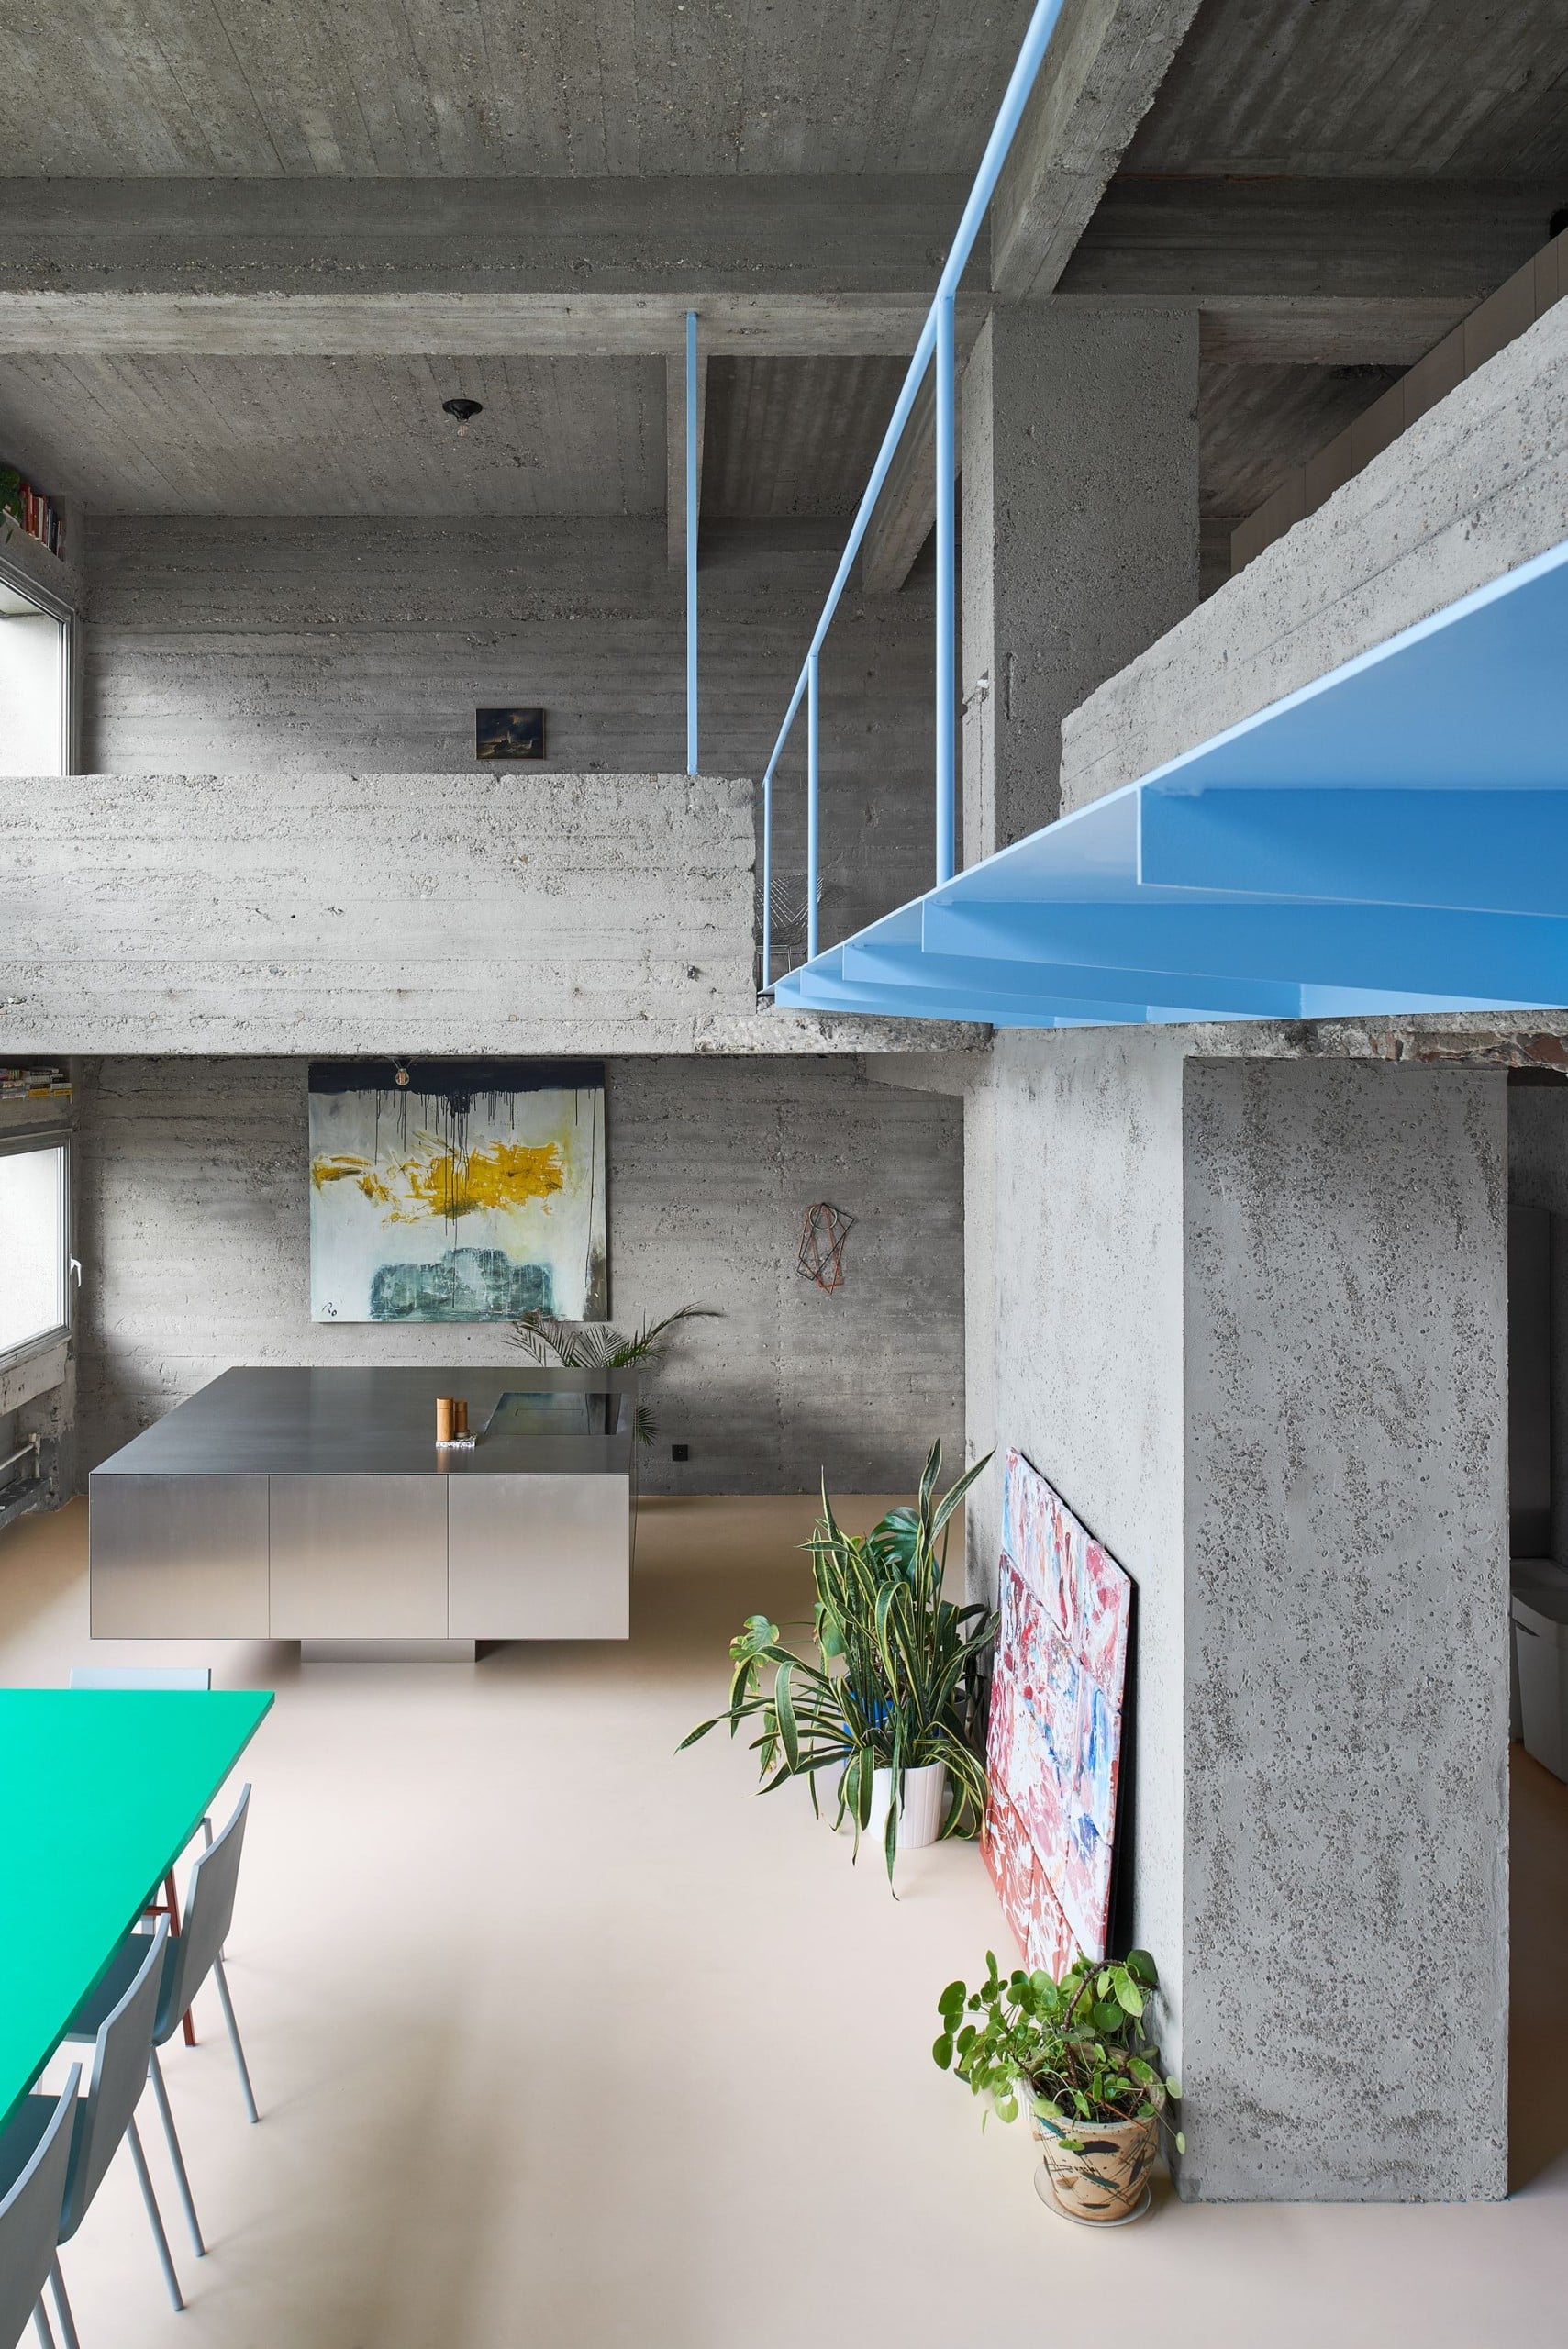 Im Betonturm "Riverside Tower" in Antwerpen hat sich Bram Van Cauter vom Studio Okami eine Maisonette-Wohnung ausgebaut. Foto: Matthijs van der Burgt